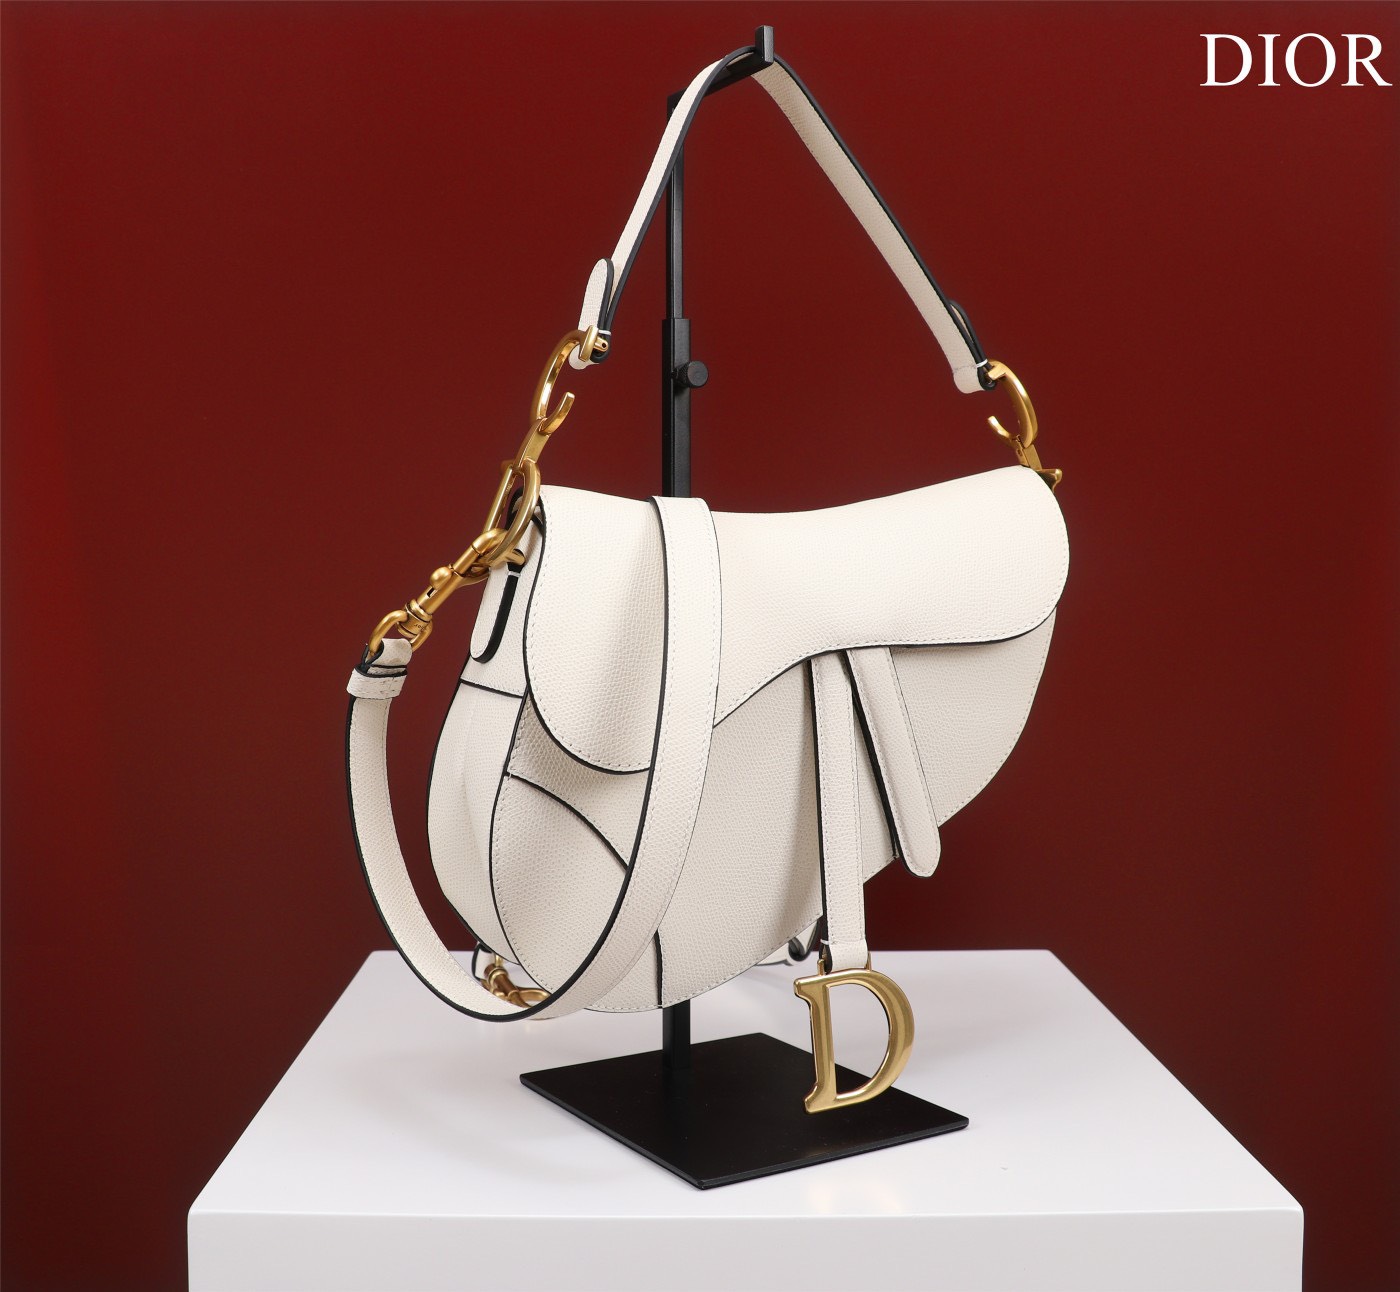 Mua túi Dior season 2023 chính hãng tại Luxity trả góp 0 tại Luxity   LUXITY